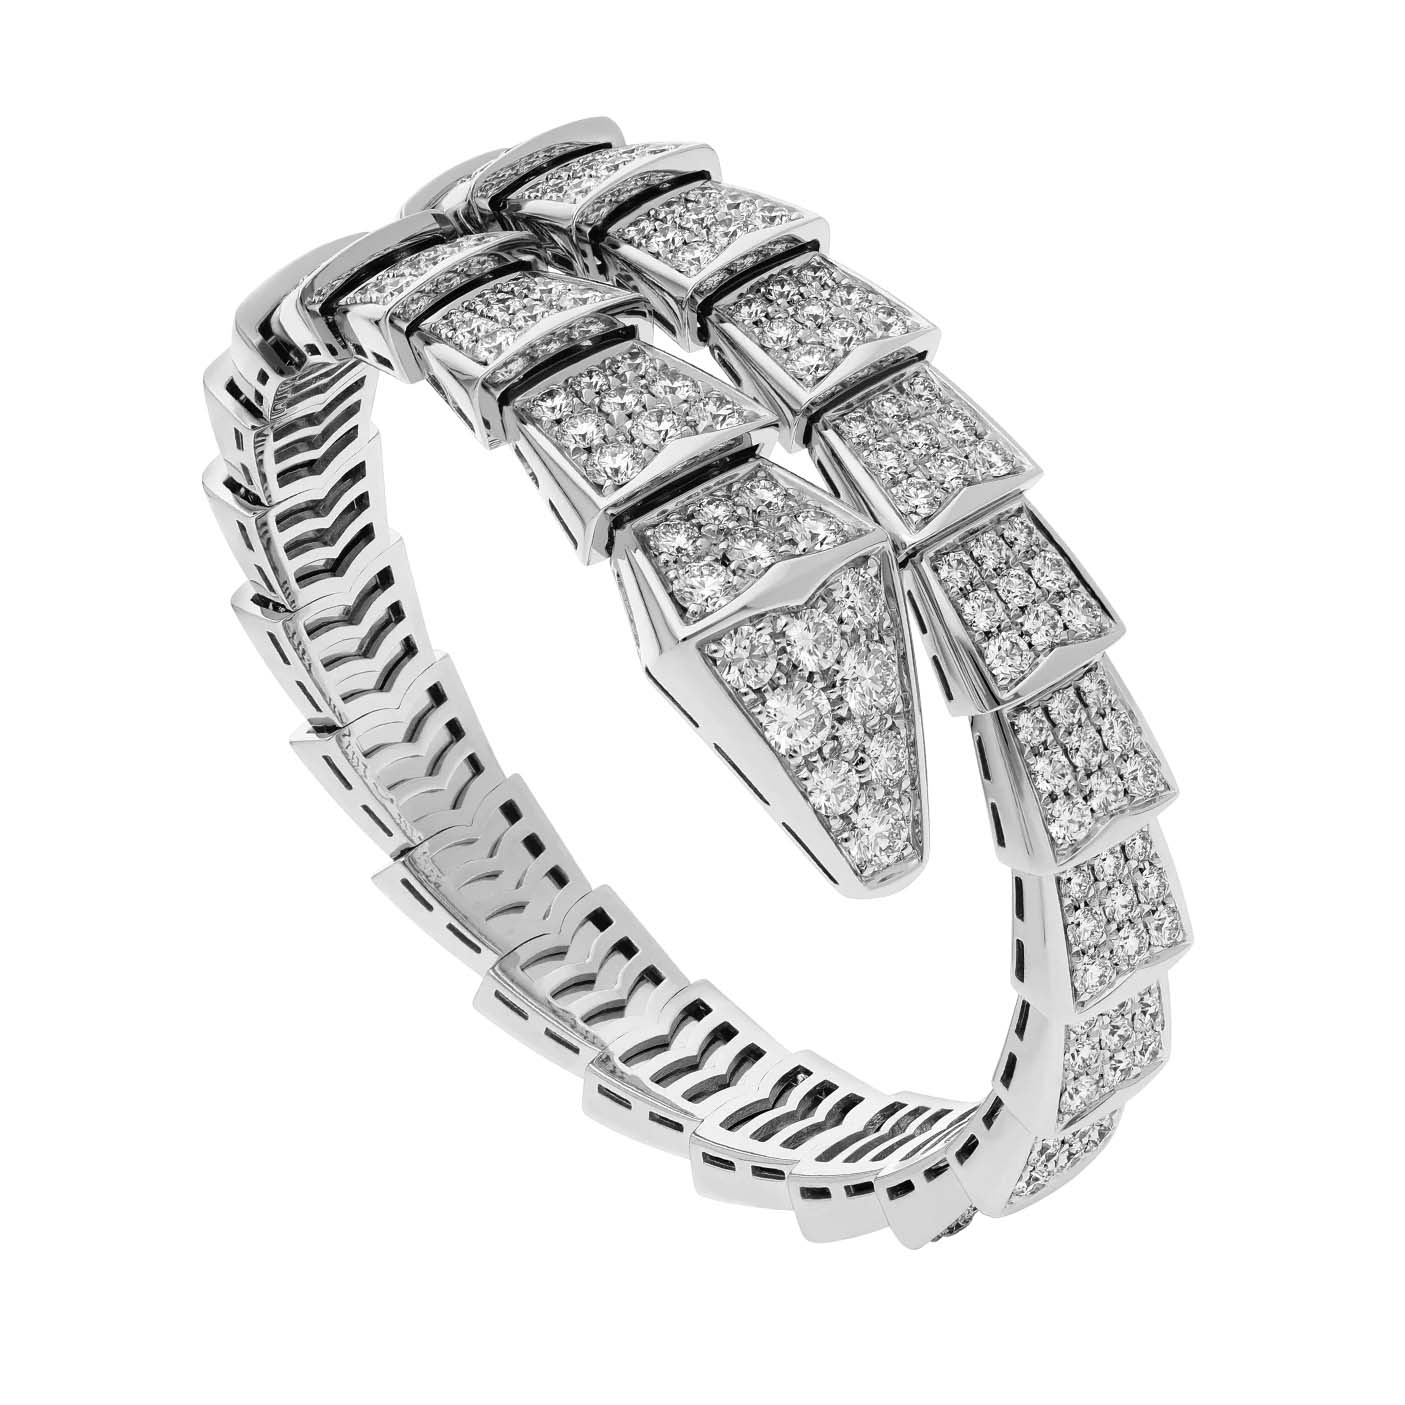 Vente en gros de bijoux OEM/ODM Bracelet à une bobine de conception personnalisée en or blanc 18 carats, serti de diamants entièrement pavés Service de bijoux OEM